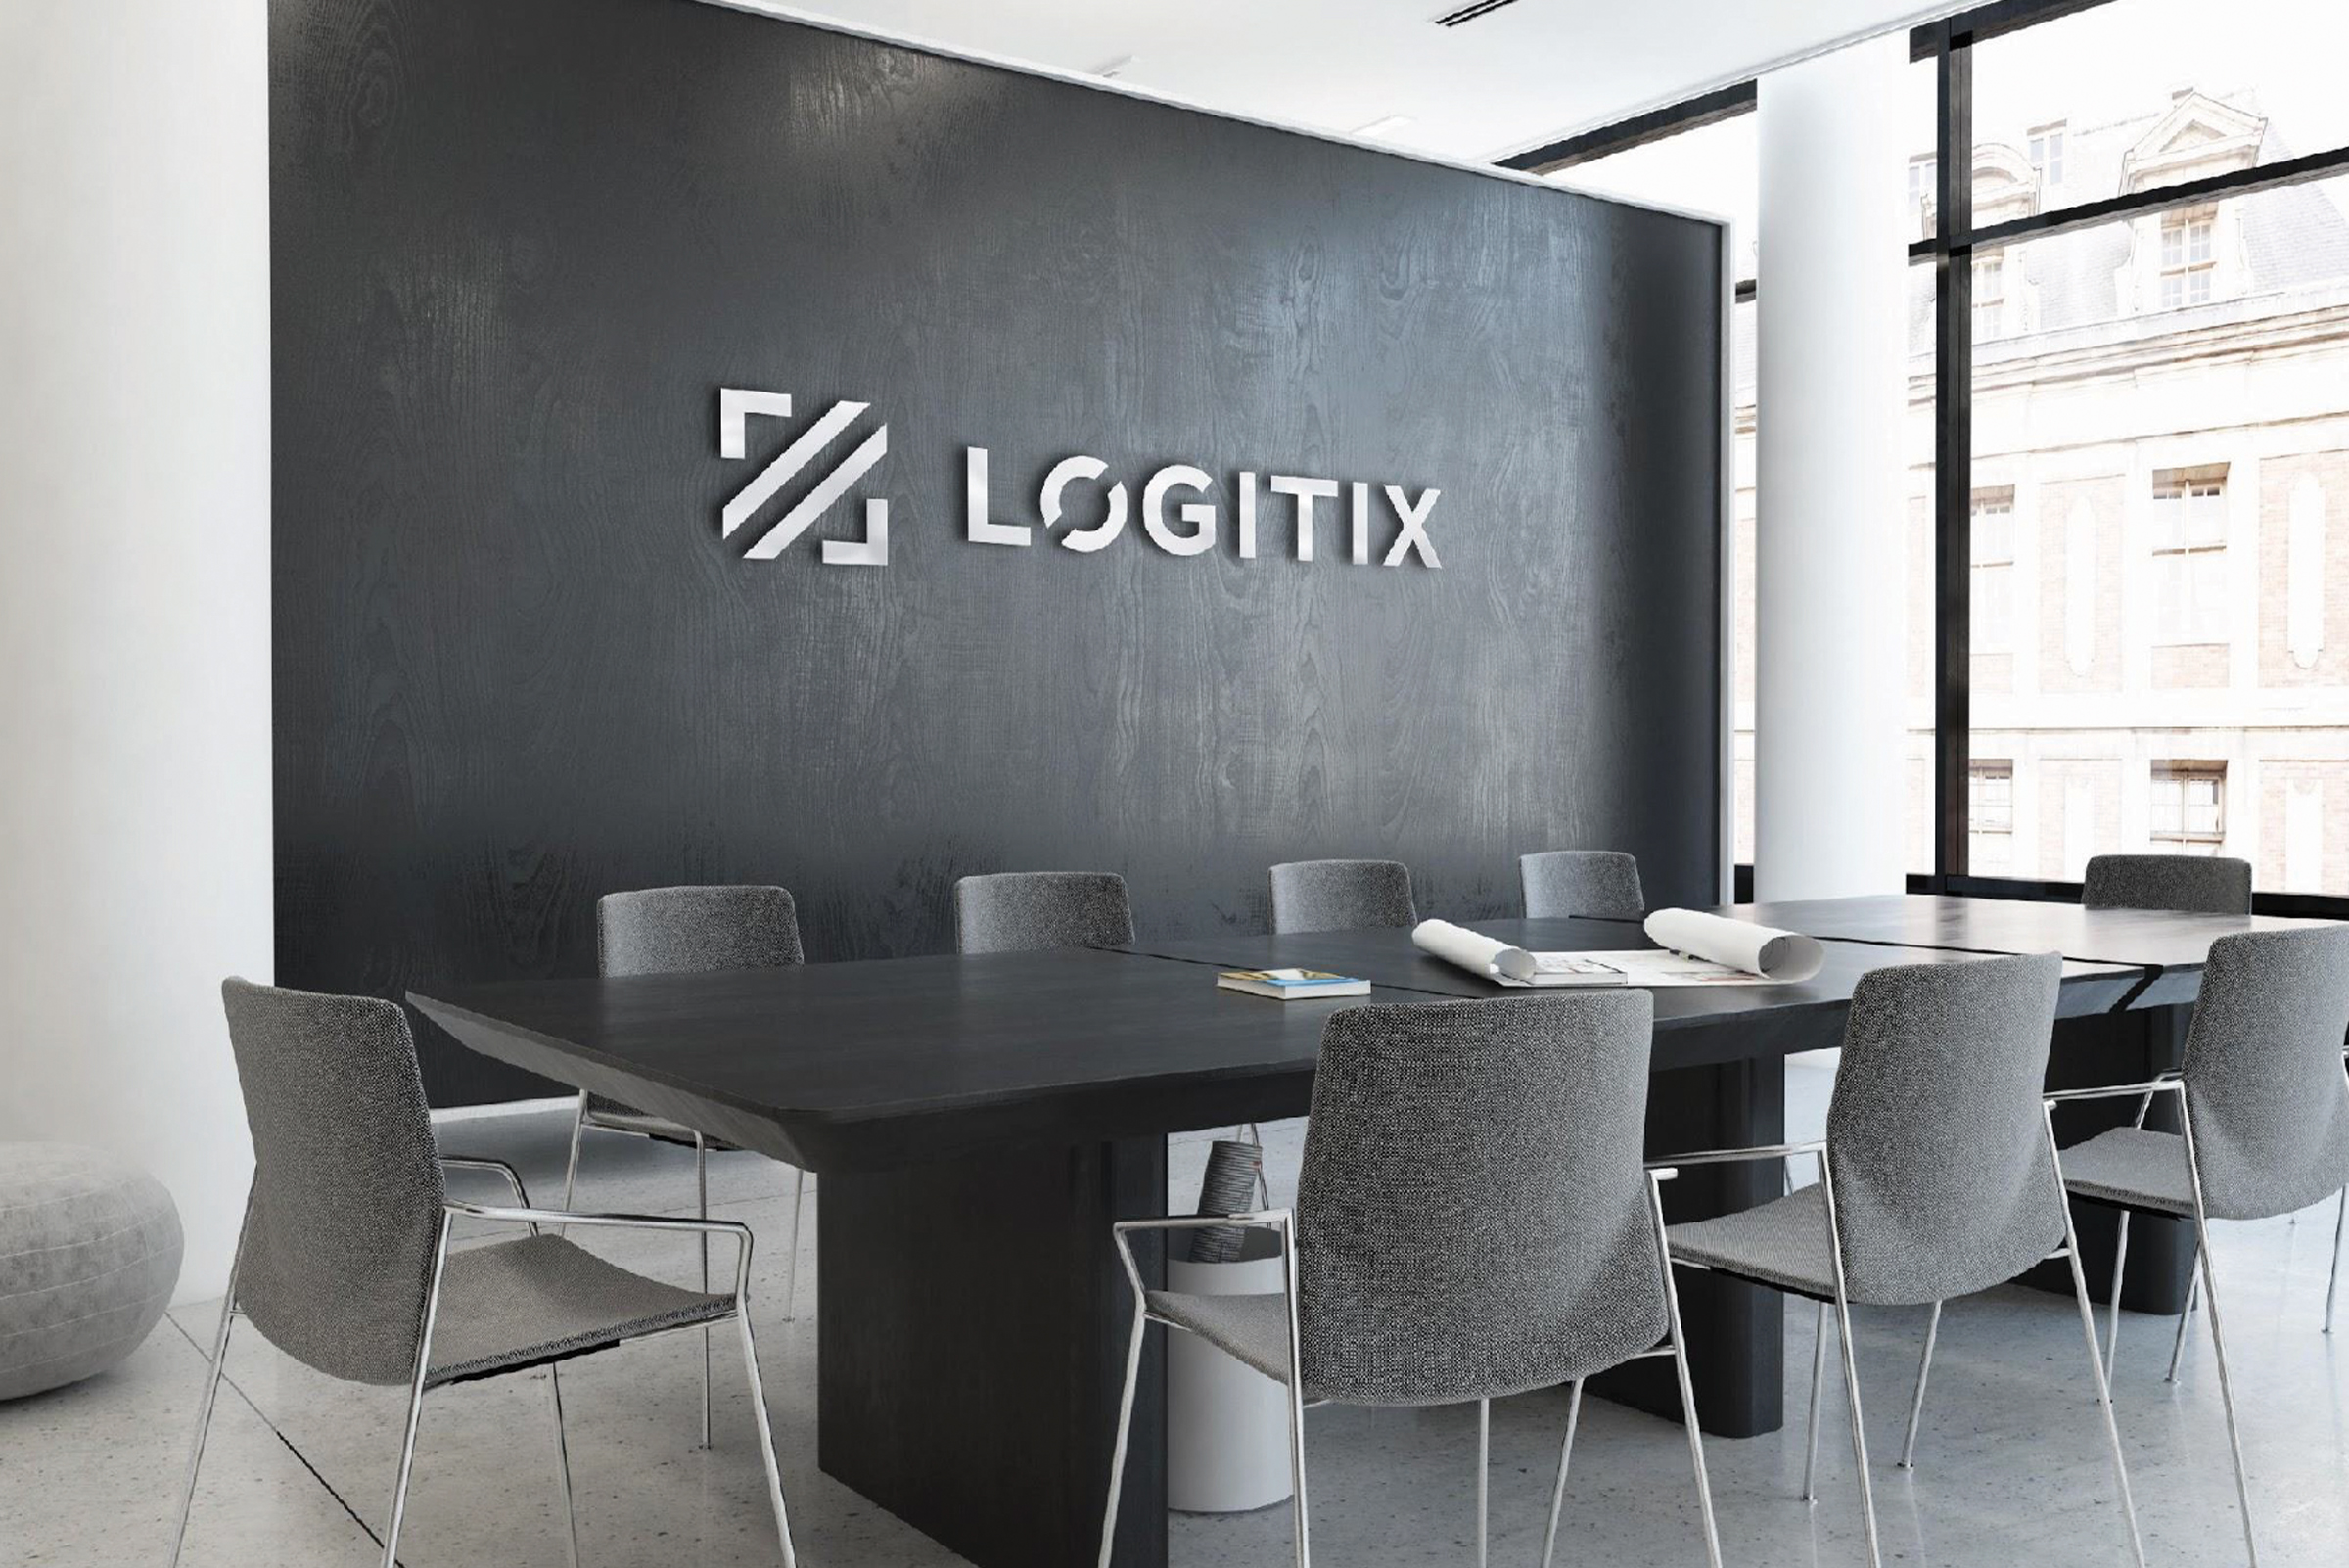 Logitix_Logo_Signage